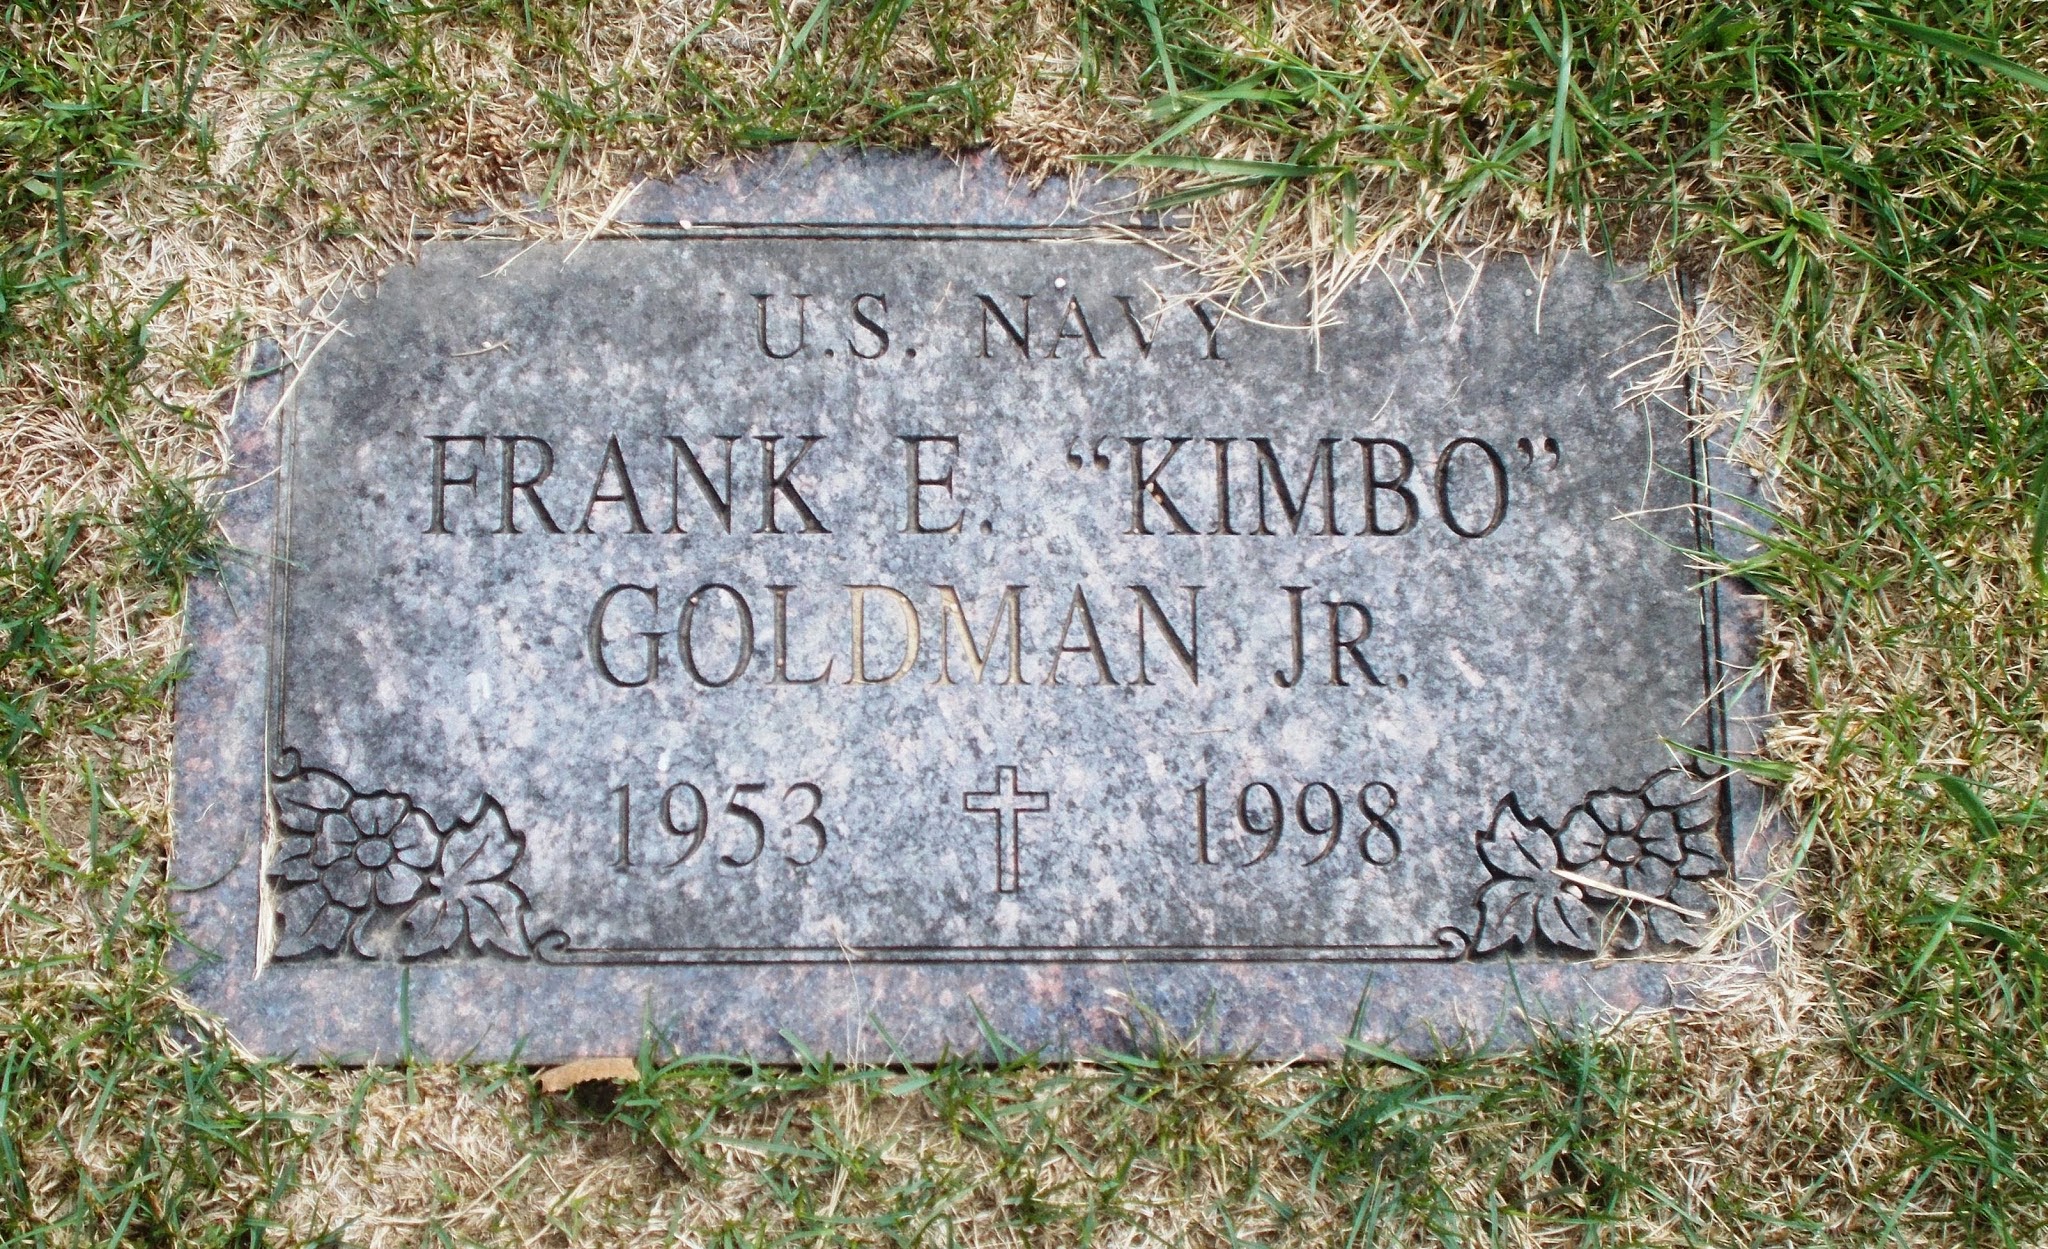 Frank E "Kimbo" Goldman, Jr